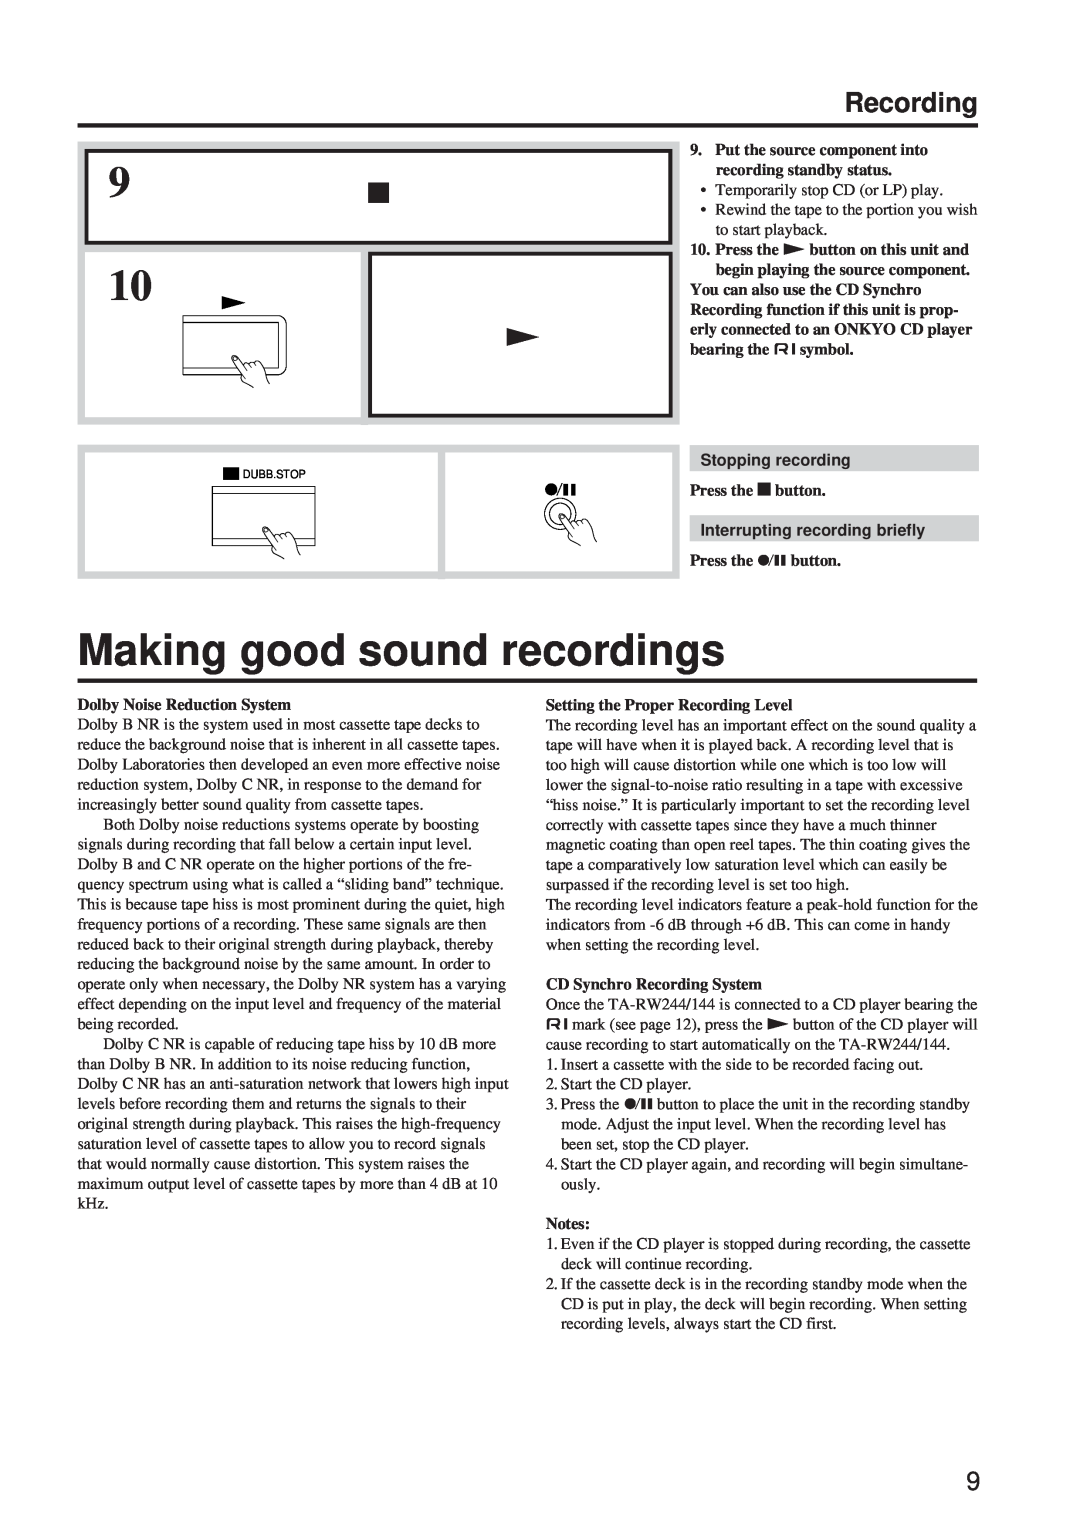 Onkyo TA-RW244/144 Making good sound recordings, Recording, Stopping recording, Interrupting recording briefly 